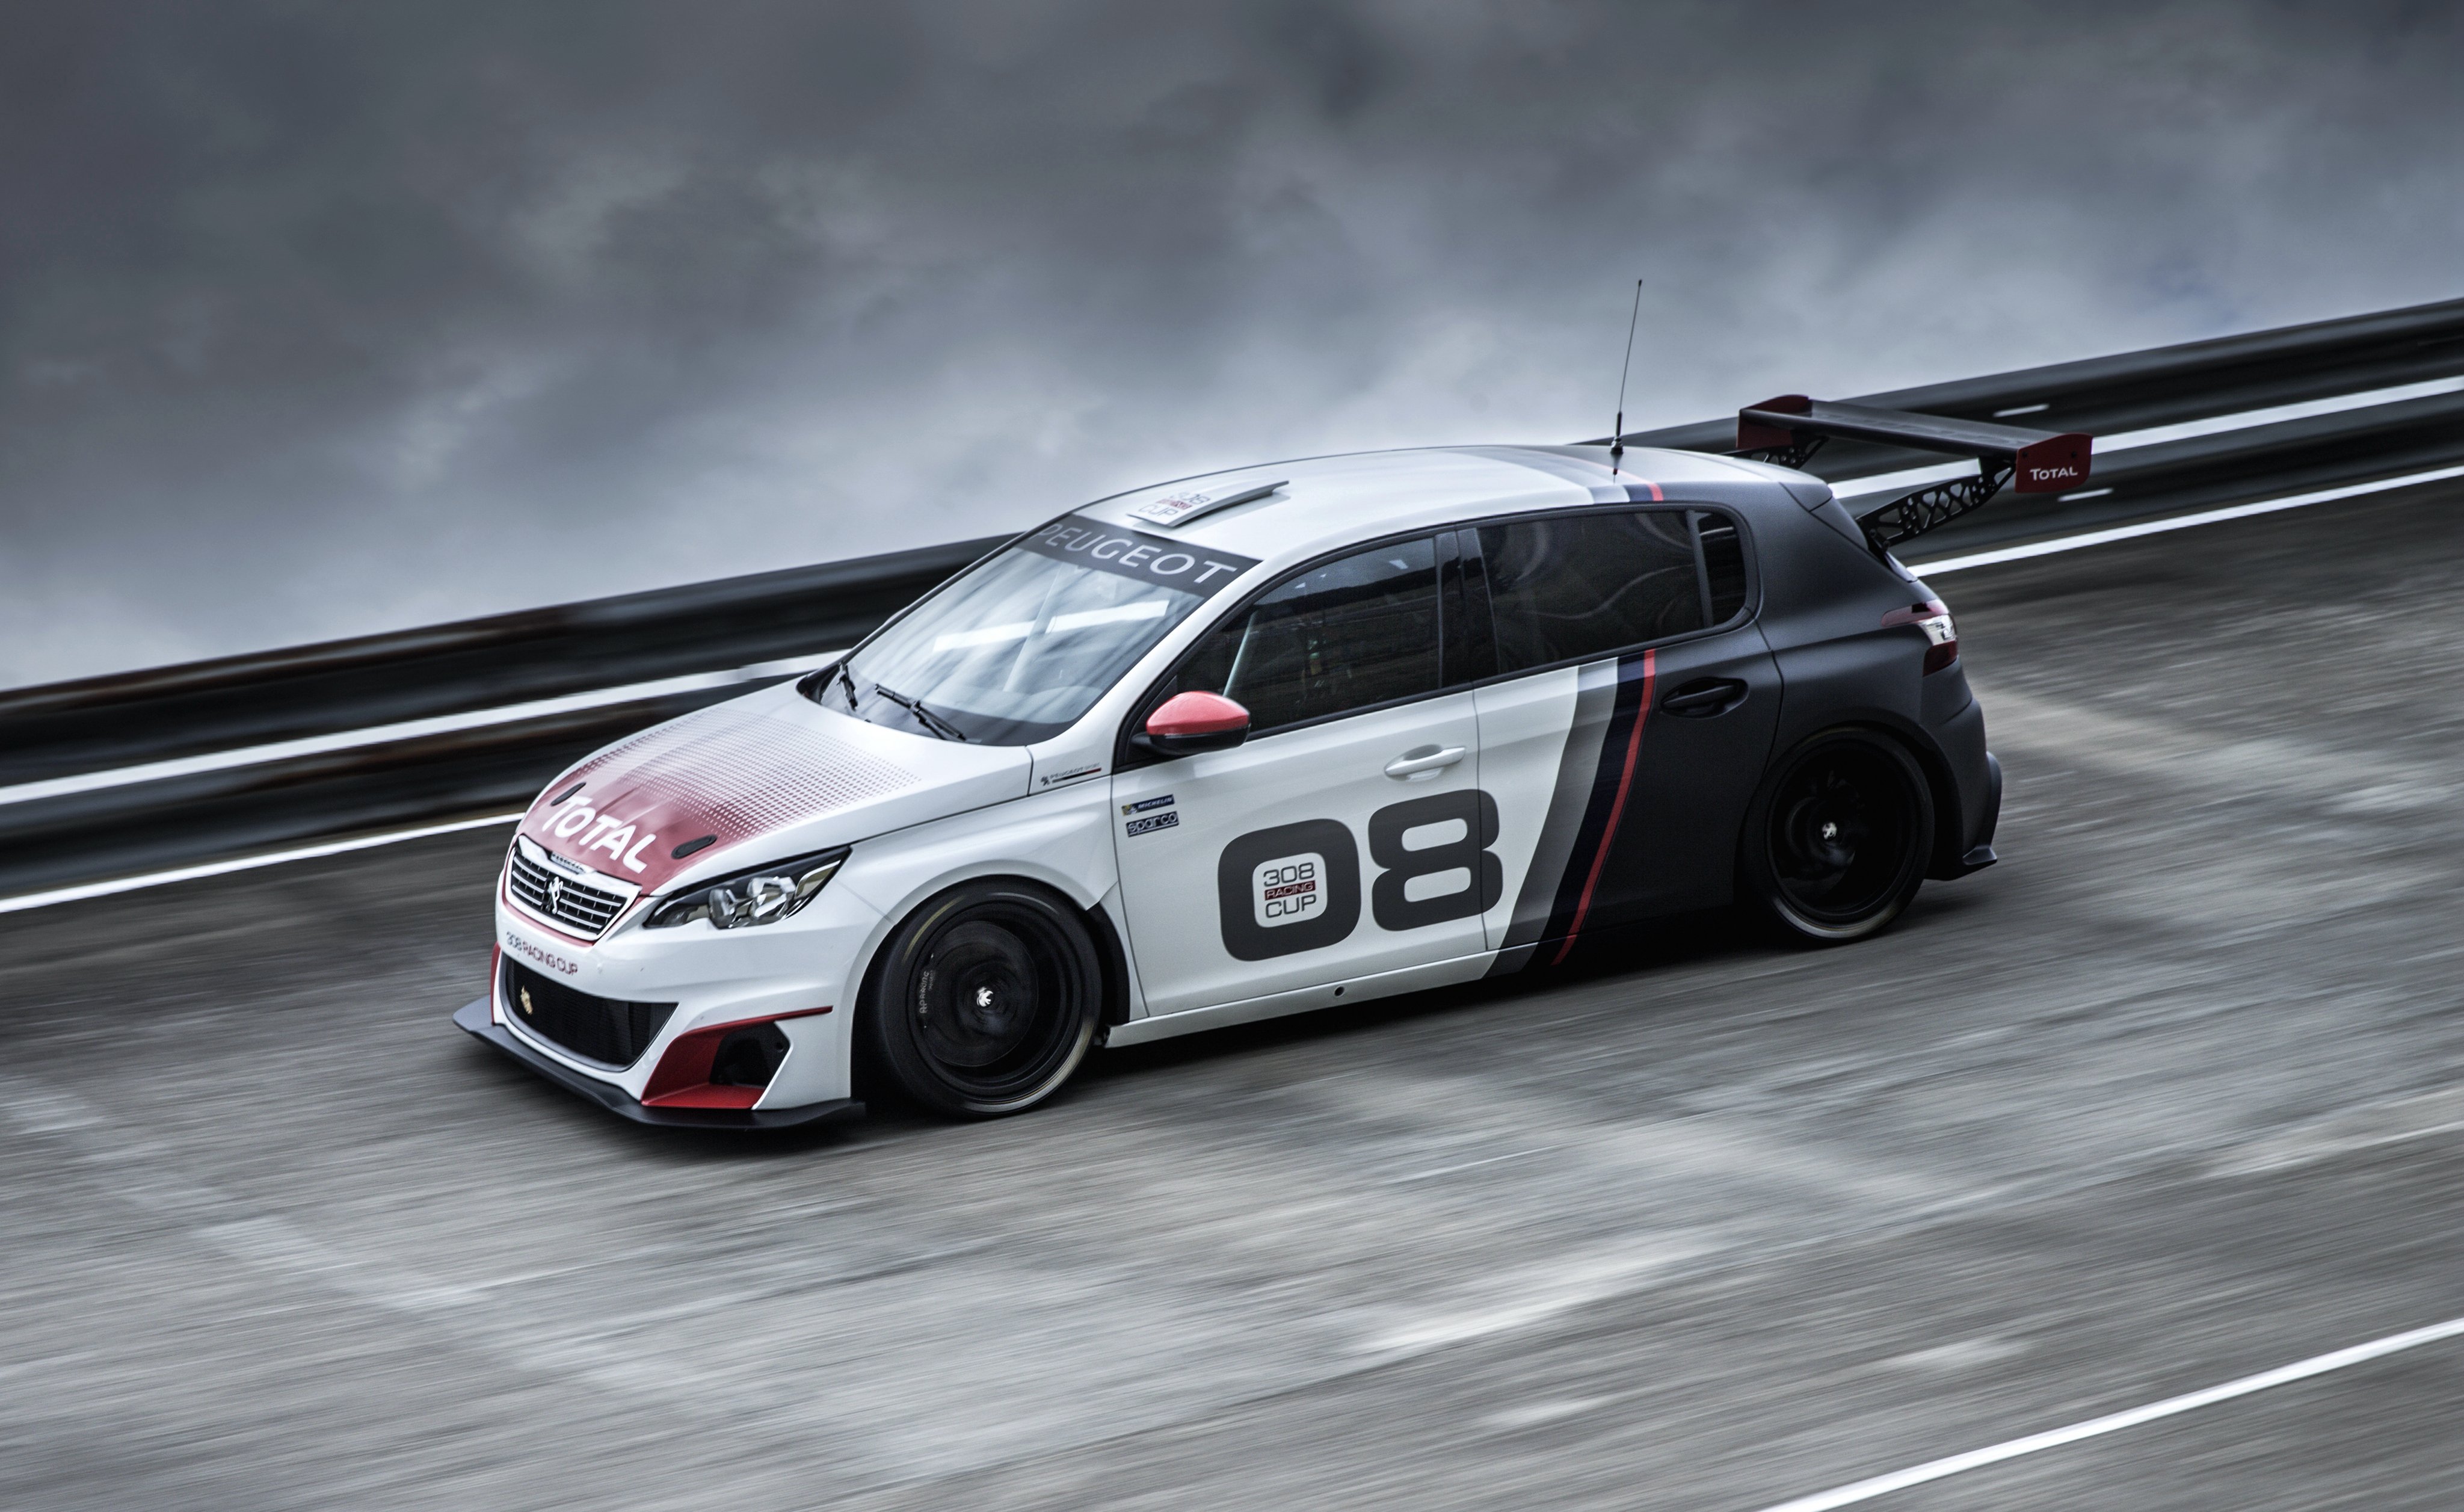 2016, Peugeot, 308, Racing, Cup, T 9, Race, Racing Wallpaper